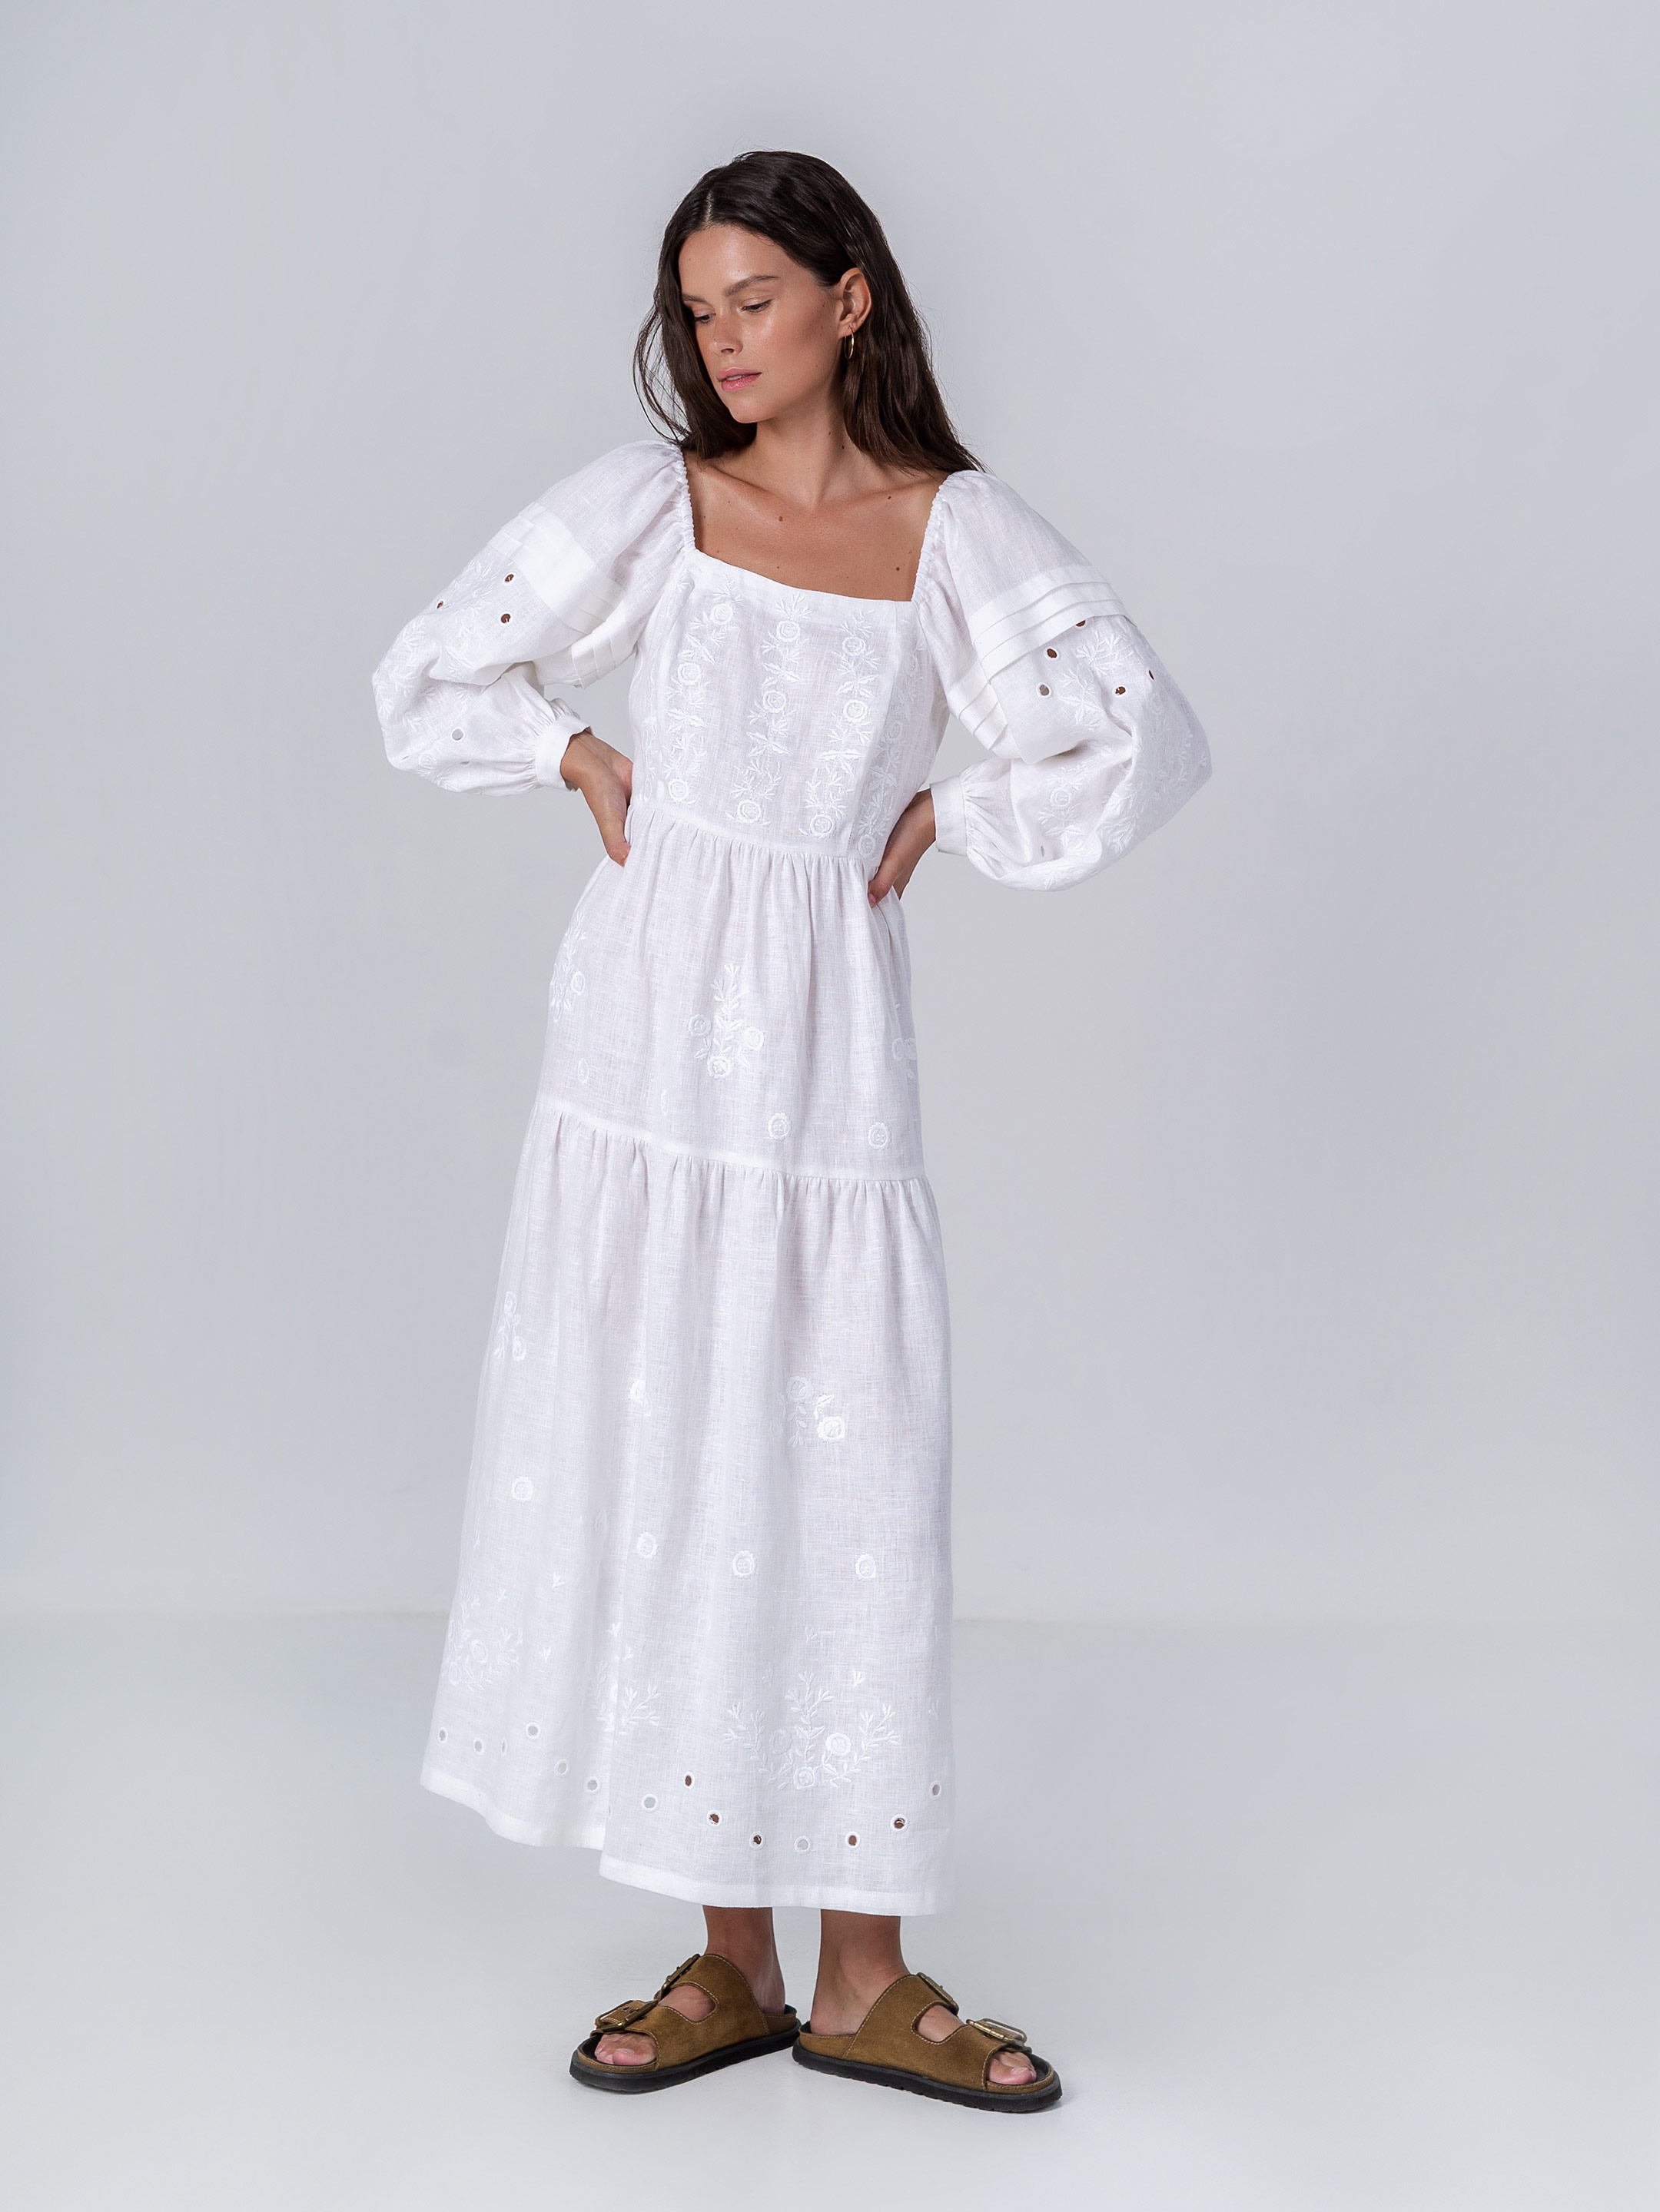 Біла лляна сукня з вишивкою Мить - фото 1